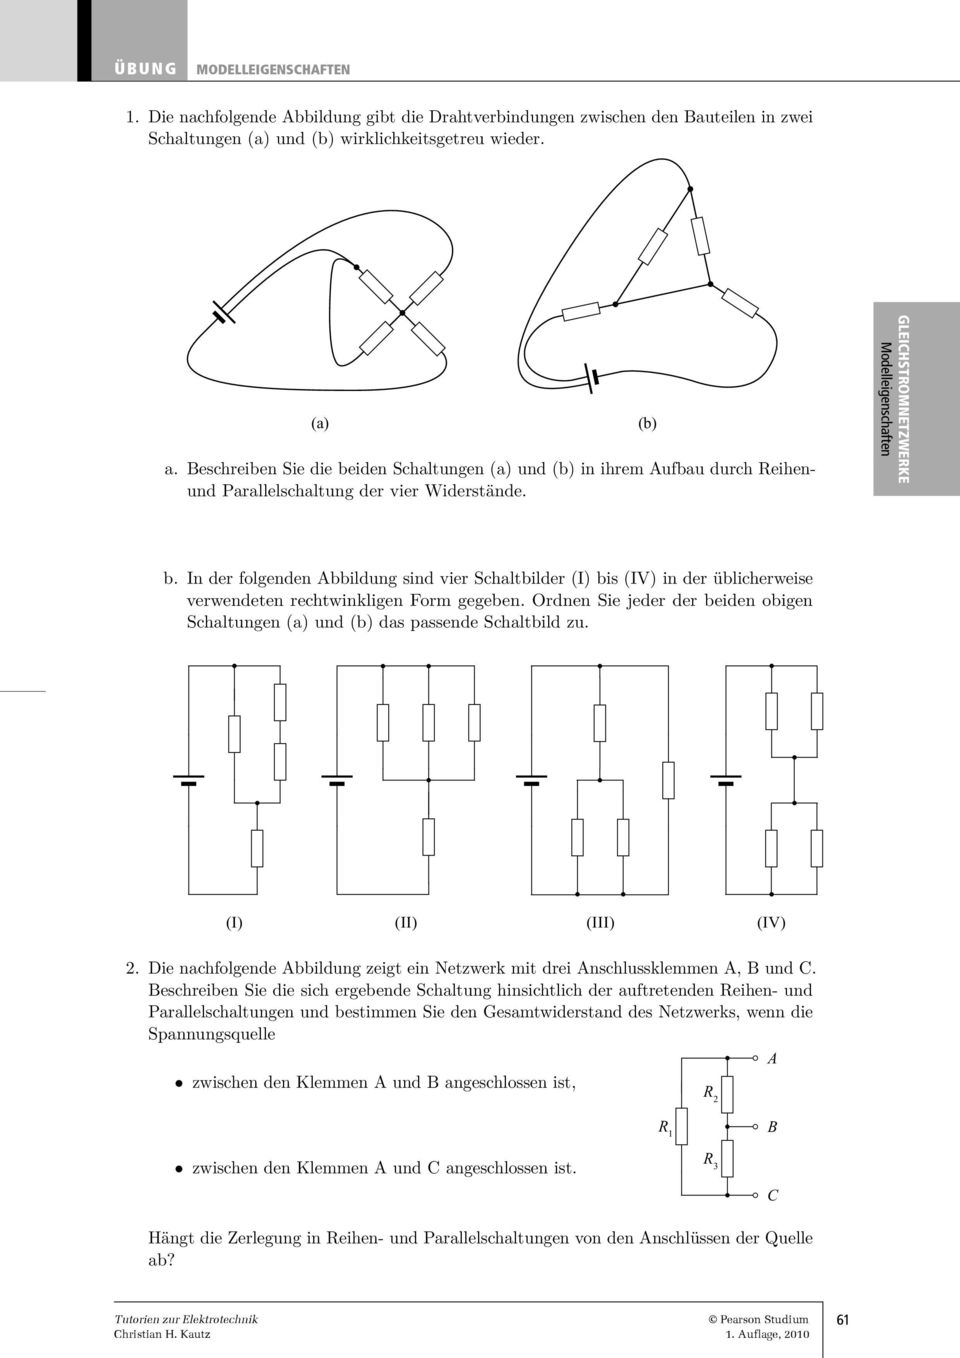 In der folgenden Abbildung sind vier Schaltbilder (I) bis (IV) in der üblicherweise verwendeten rechtwinkligen Form gegeben.